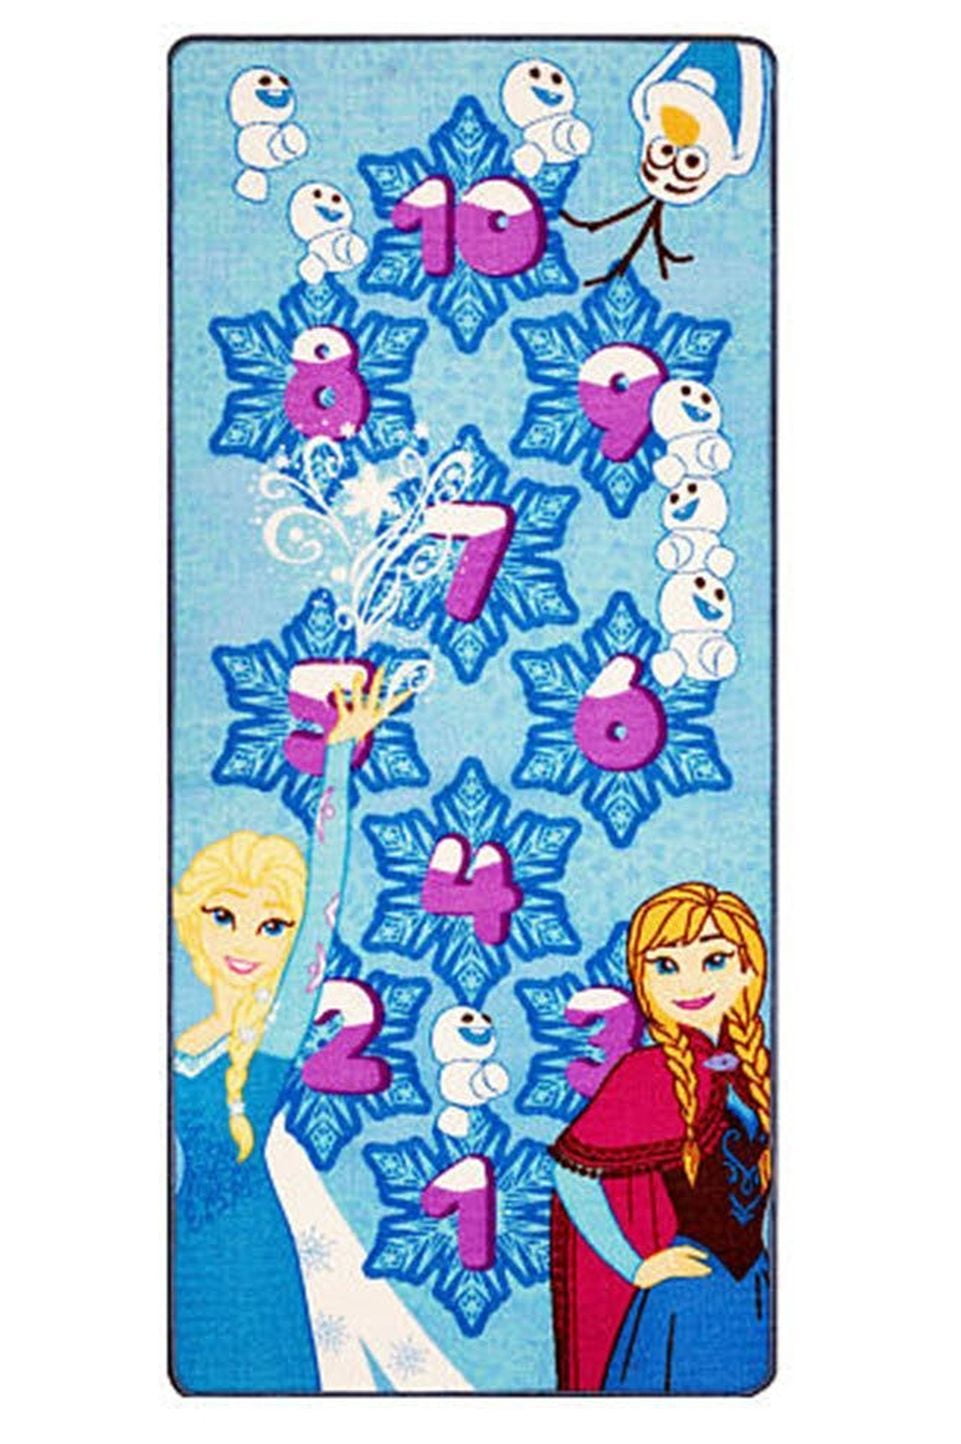 NEW $50 Girls Disney Frozen 4 Piece Hop Scotch Play Mat Game Rug-size 31x44 